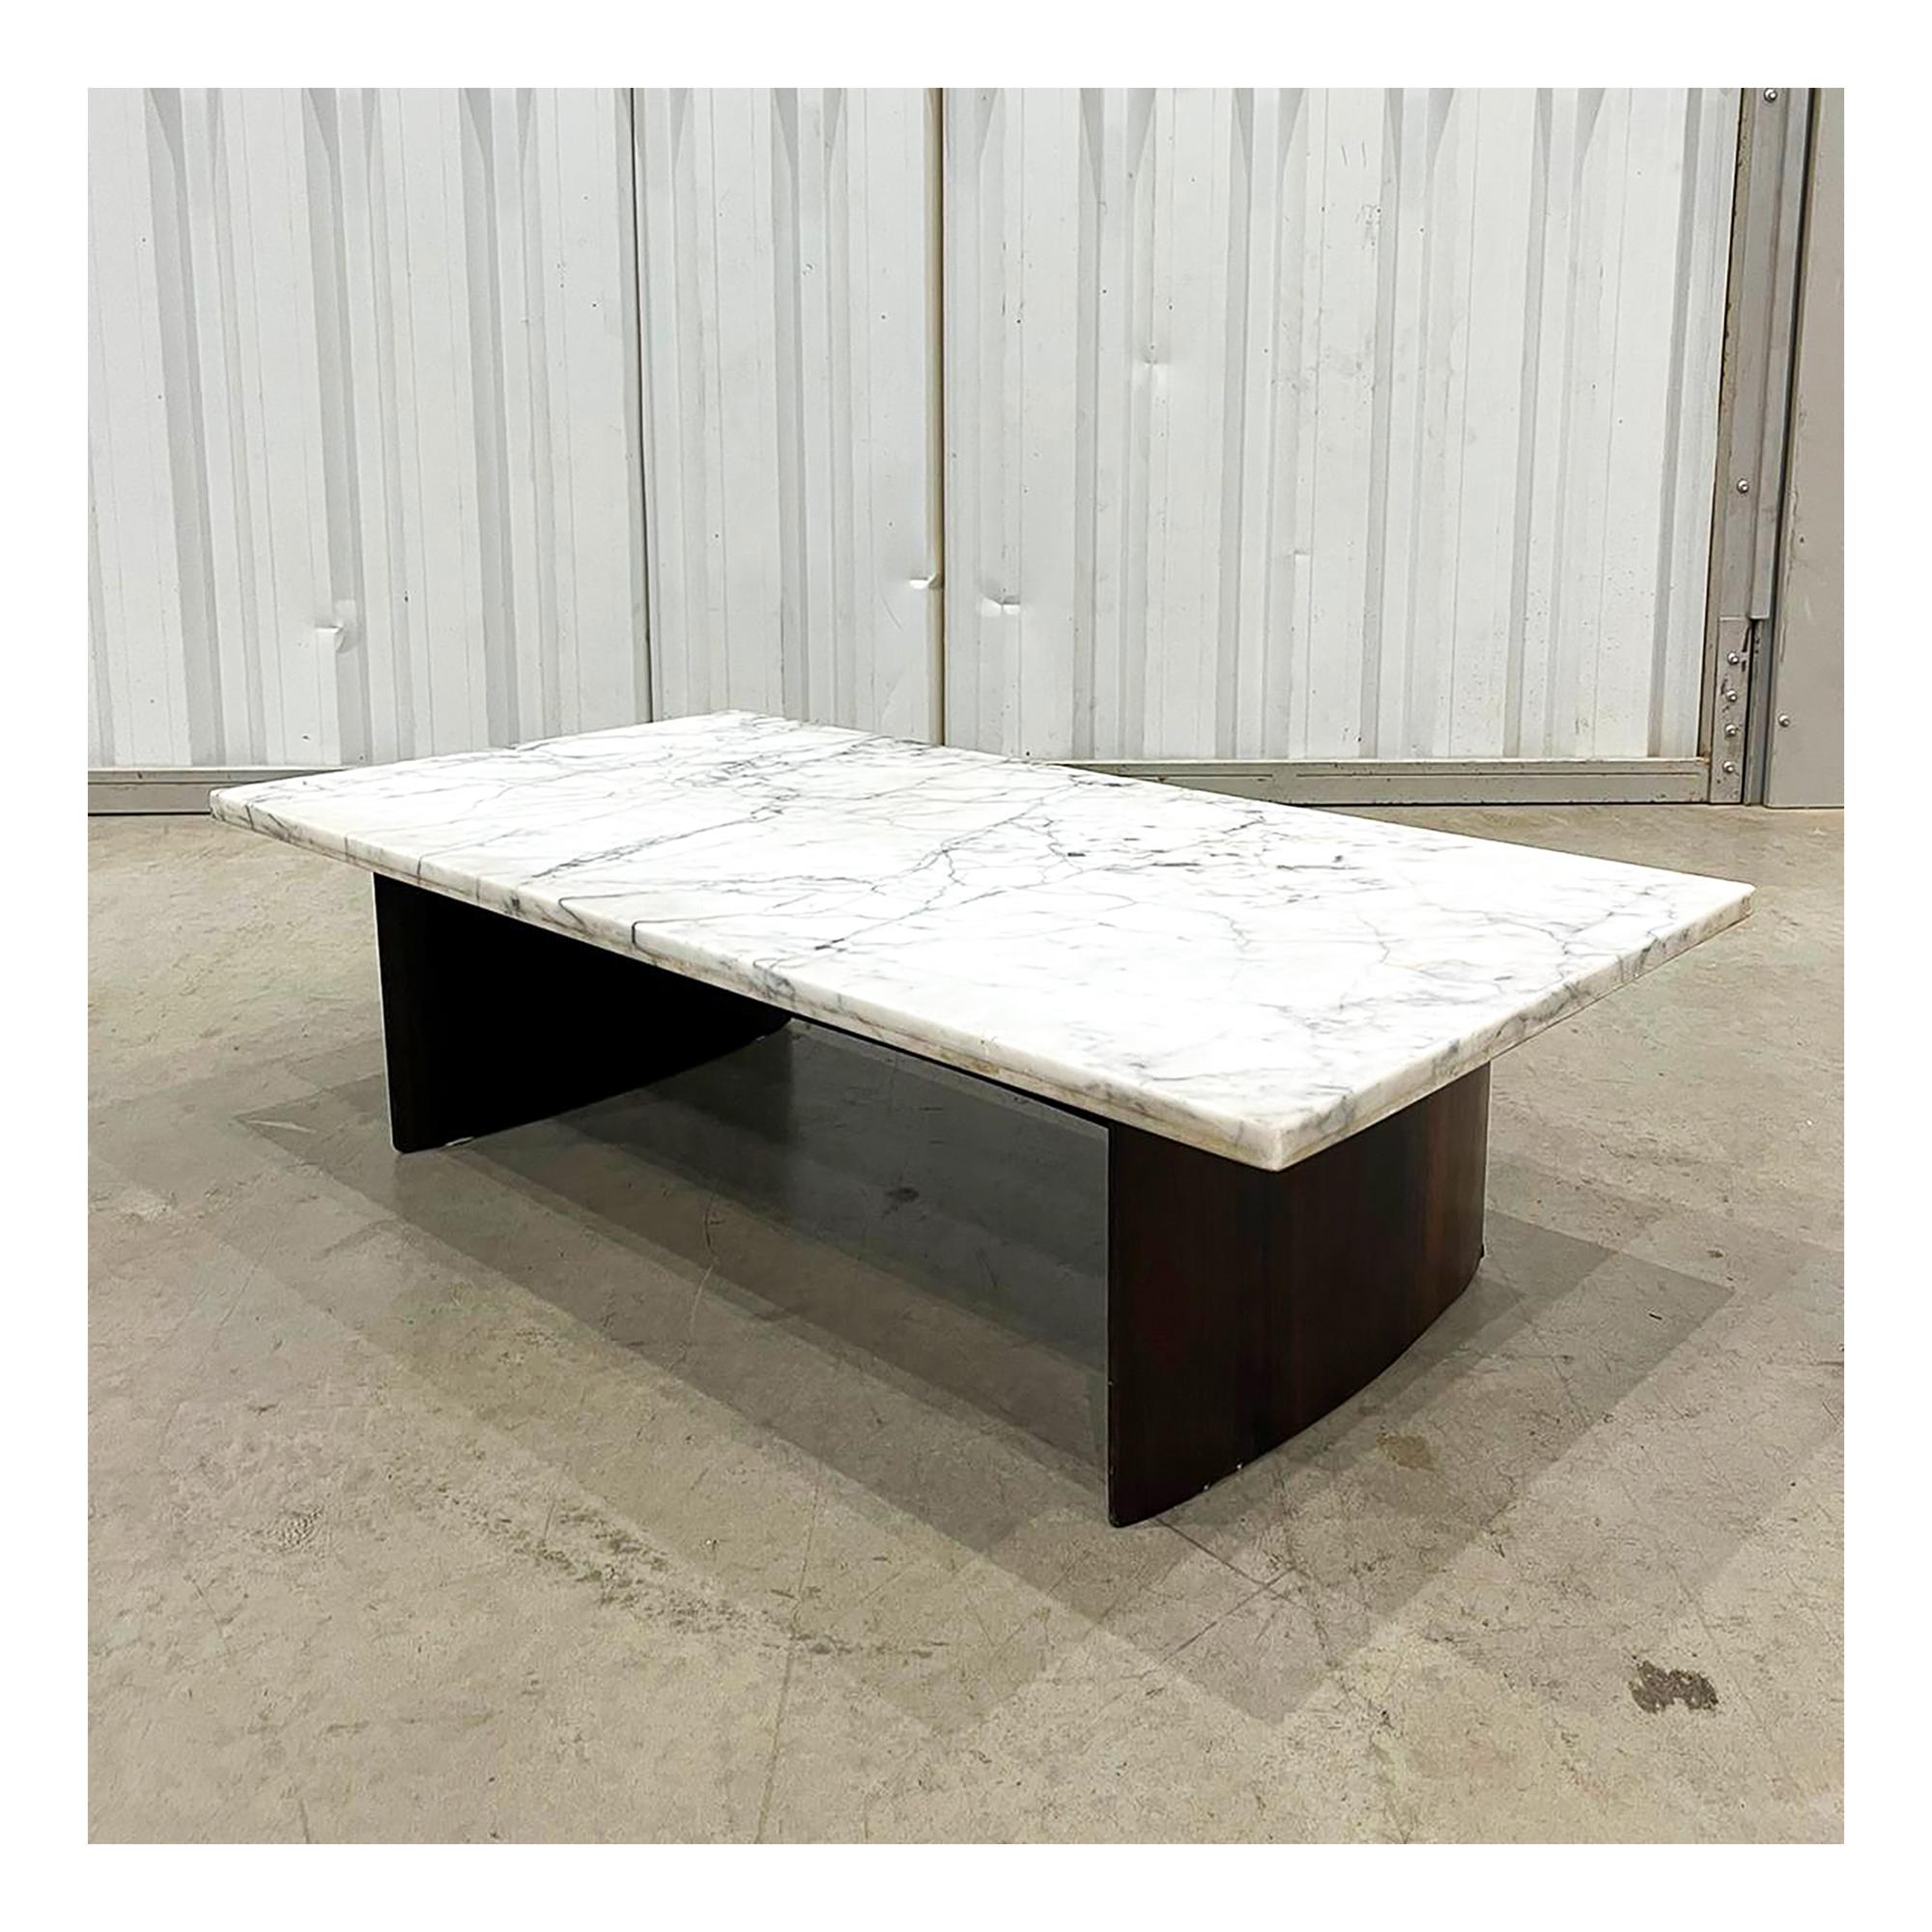 Disponible aujourd'hui à New York avec livraison nationale gratuite, cette table basse moderne brésilienne en bois dur et en marbre fabriquée par Joaquim Tenreiro dans les années 50 est magnifique.

Cette table basse a une structure en bois de